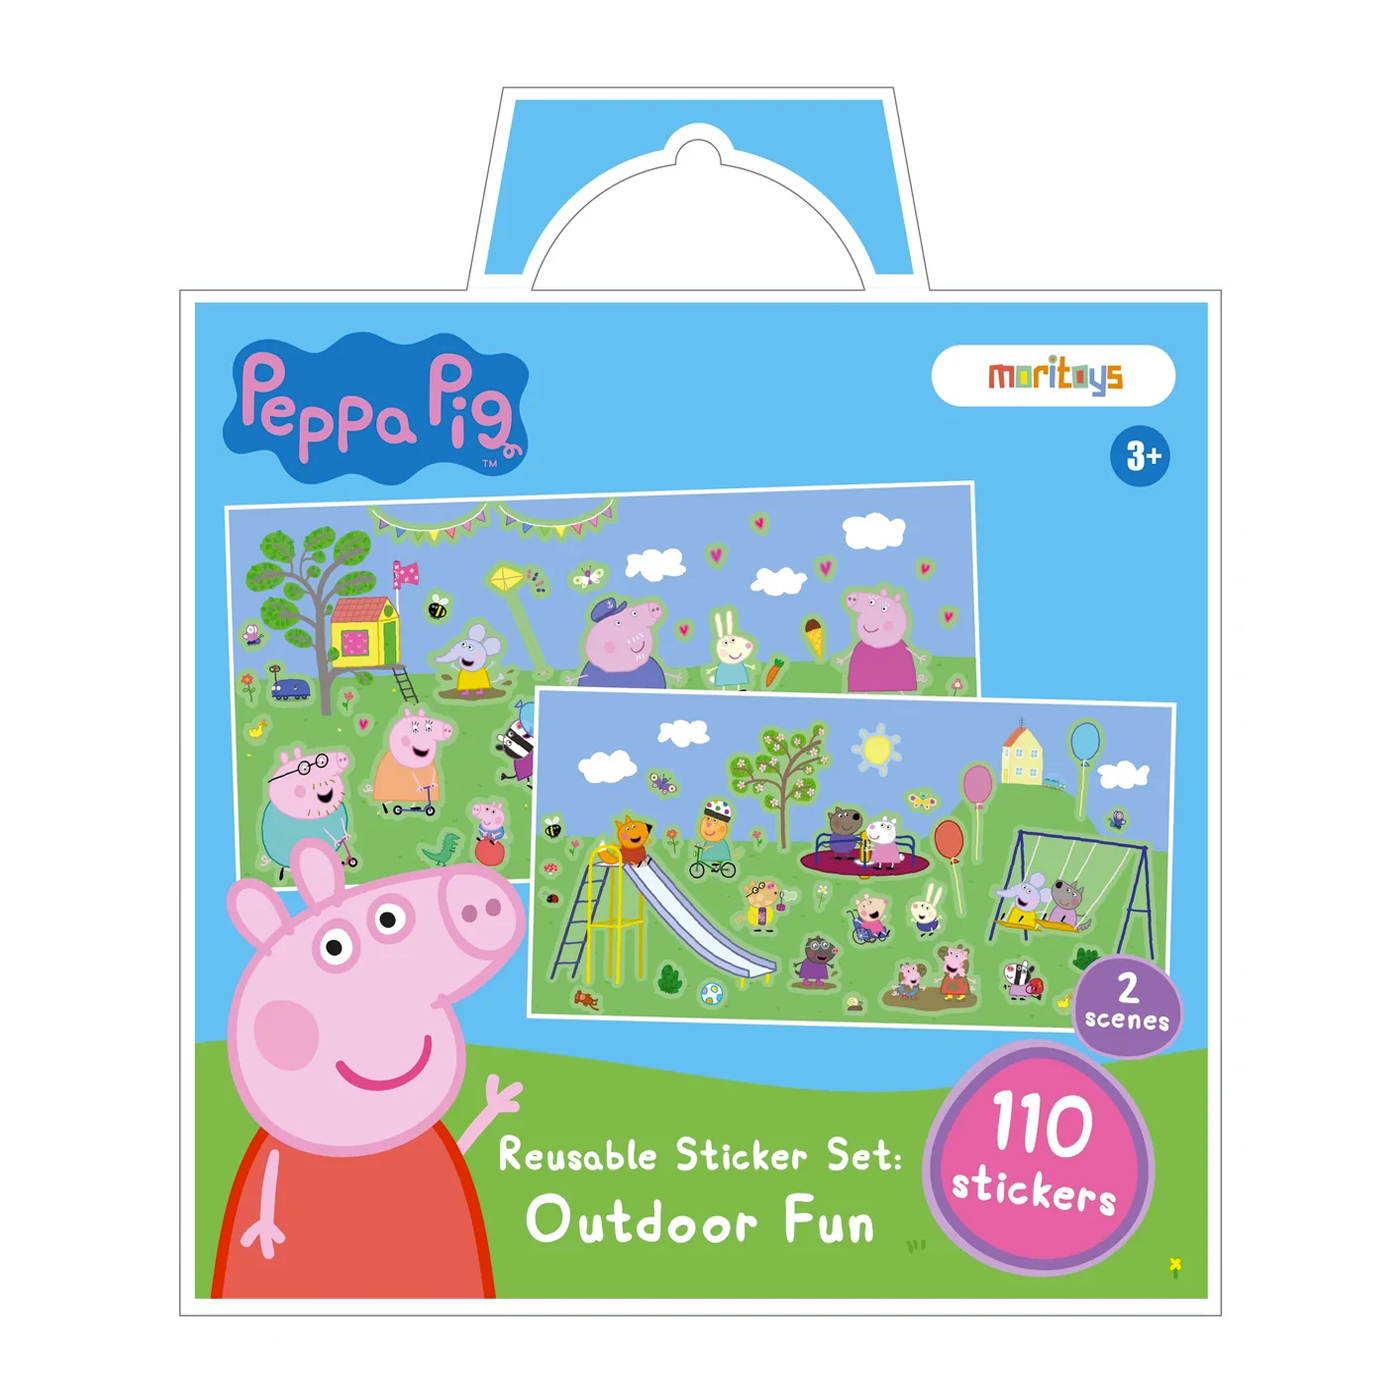 MORİTOYS Peppa Pig: Reusable Sticker Set Outdoor Fun - 110 Çıkartma 2 Sahne